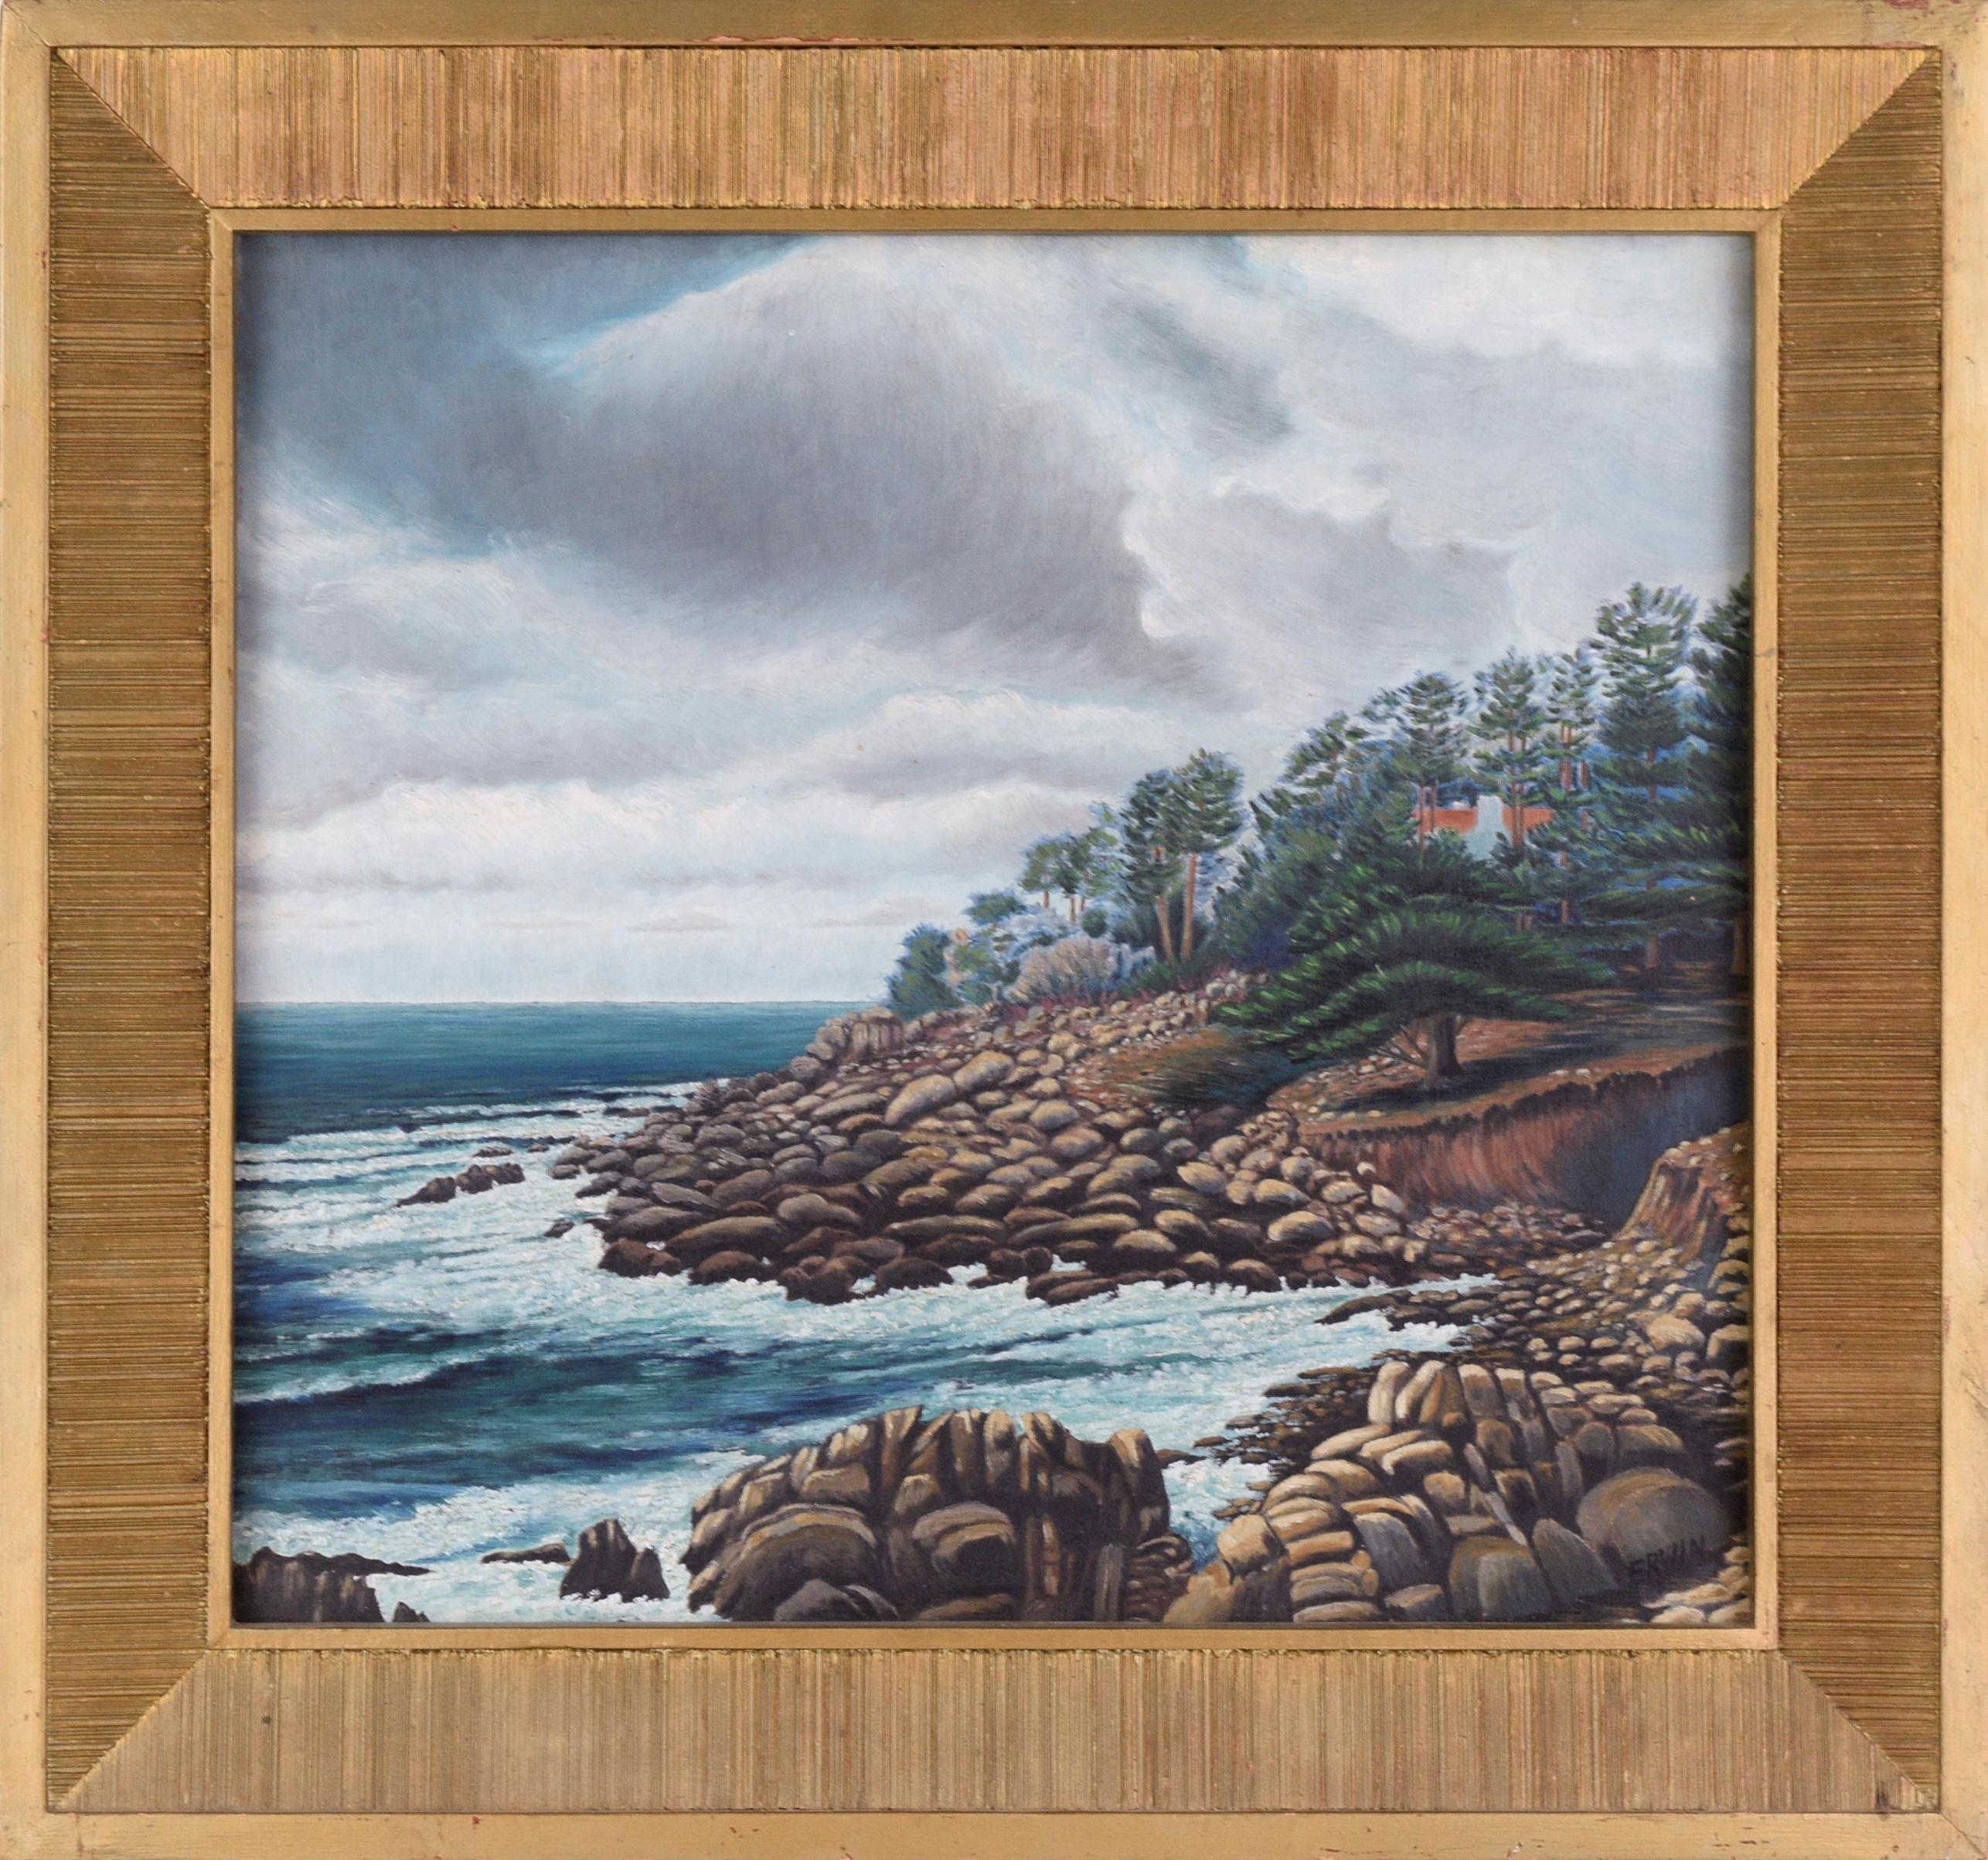 Erwin M. Wendt Landscape Painting - "Monterey Coast", California Landscape 1938